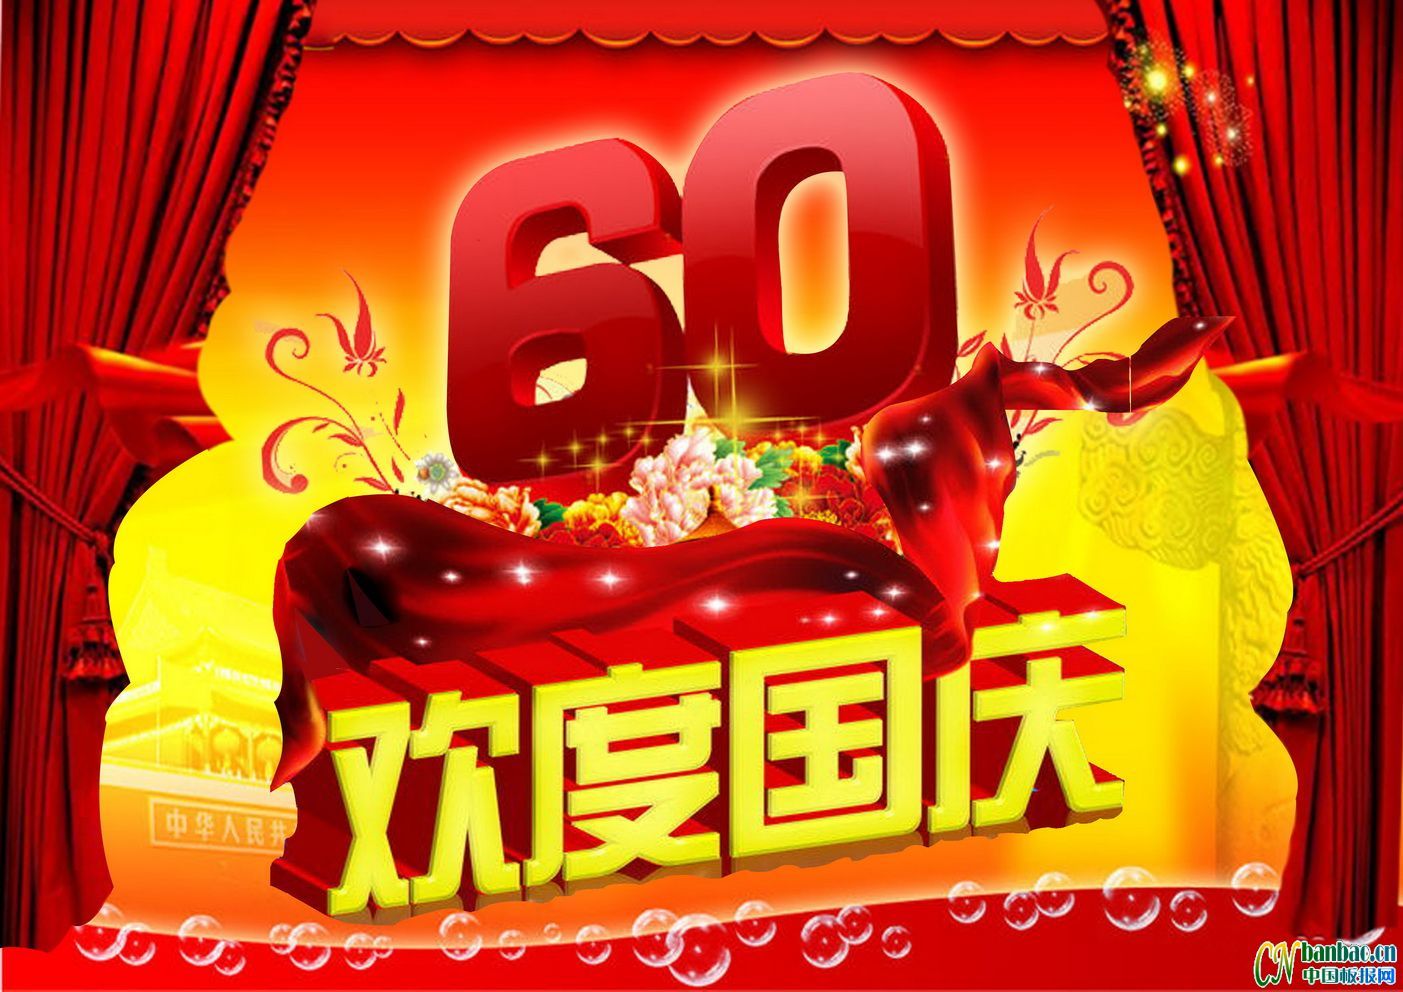 中国建国60年庆典板报